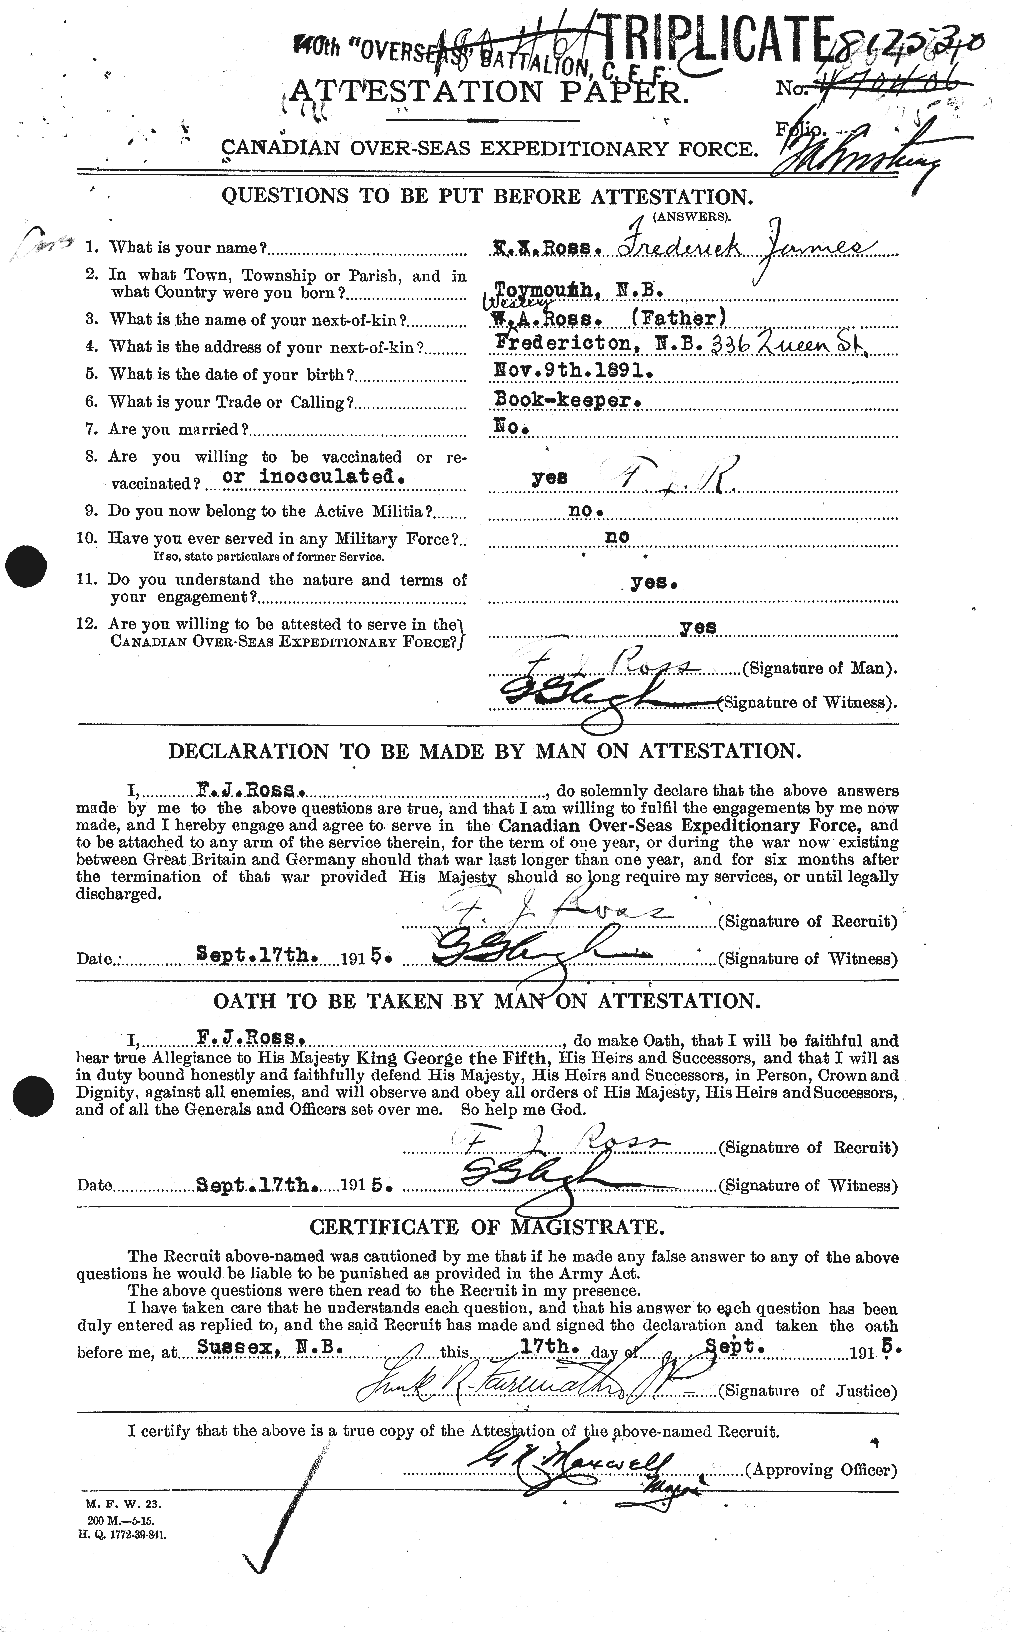 Dossiers du Personnel de la Première Guerre mondiale - CEC 613039a